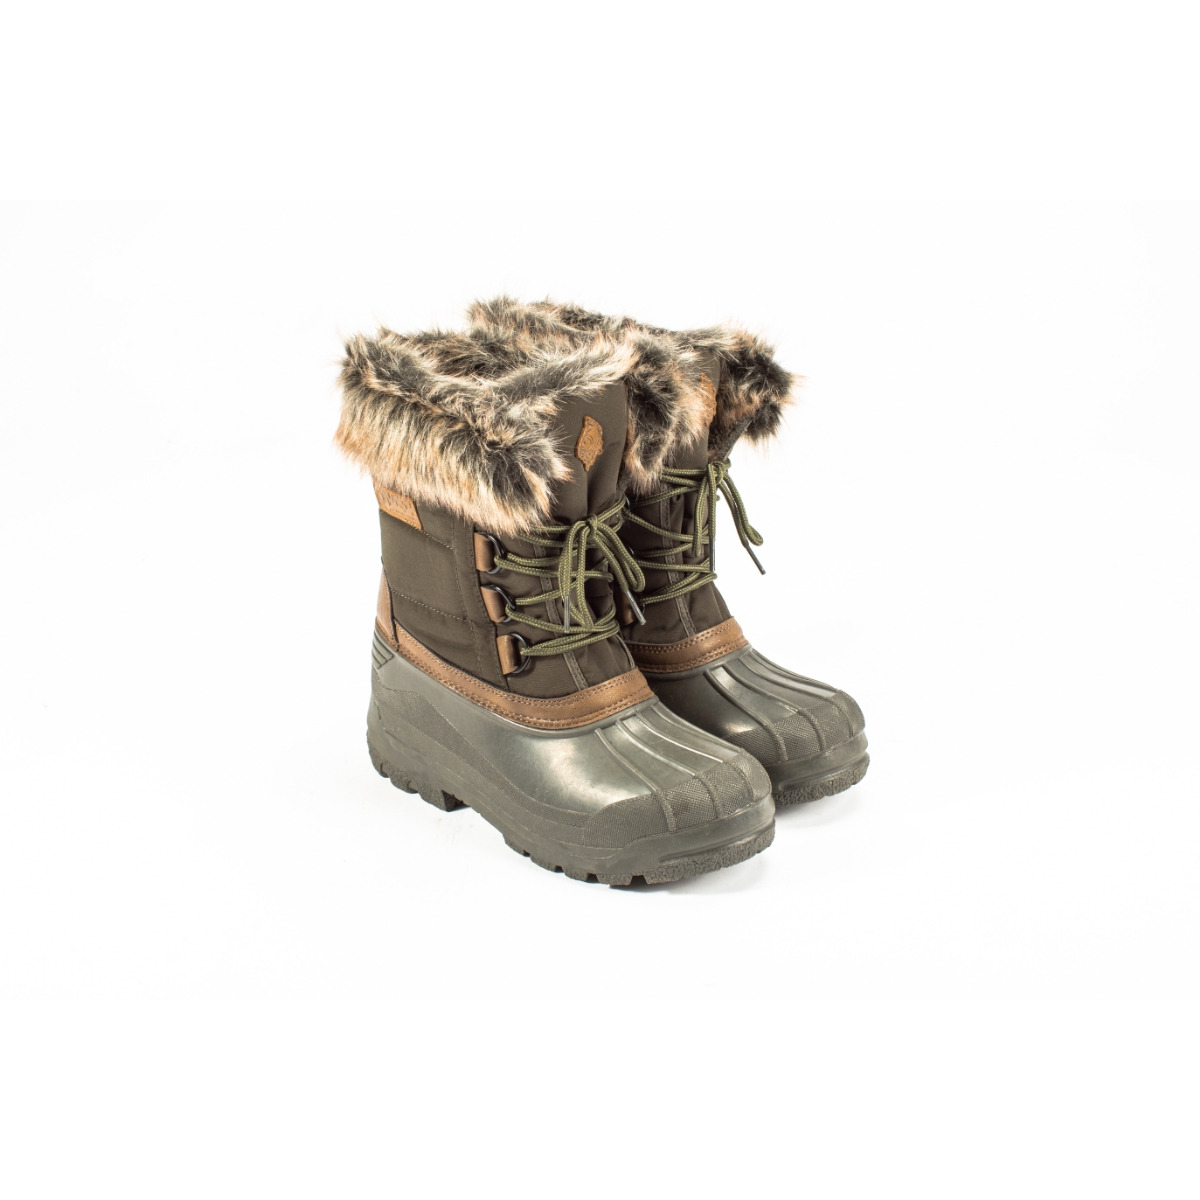 Nash Zt Polar Boots - Size 11